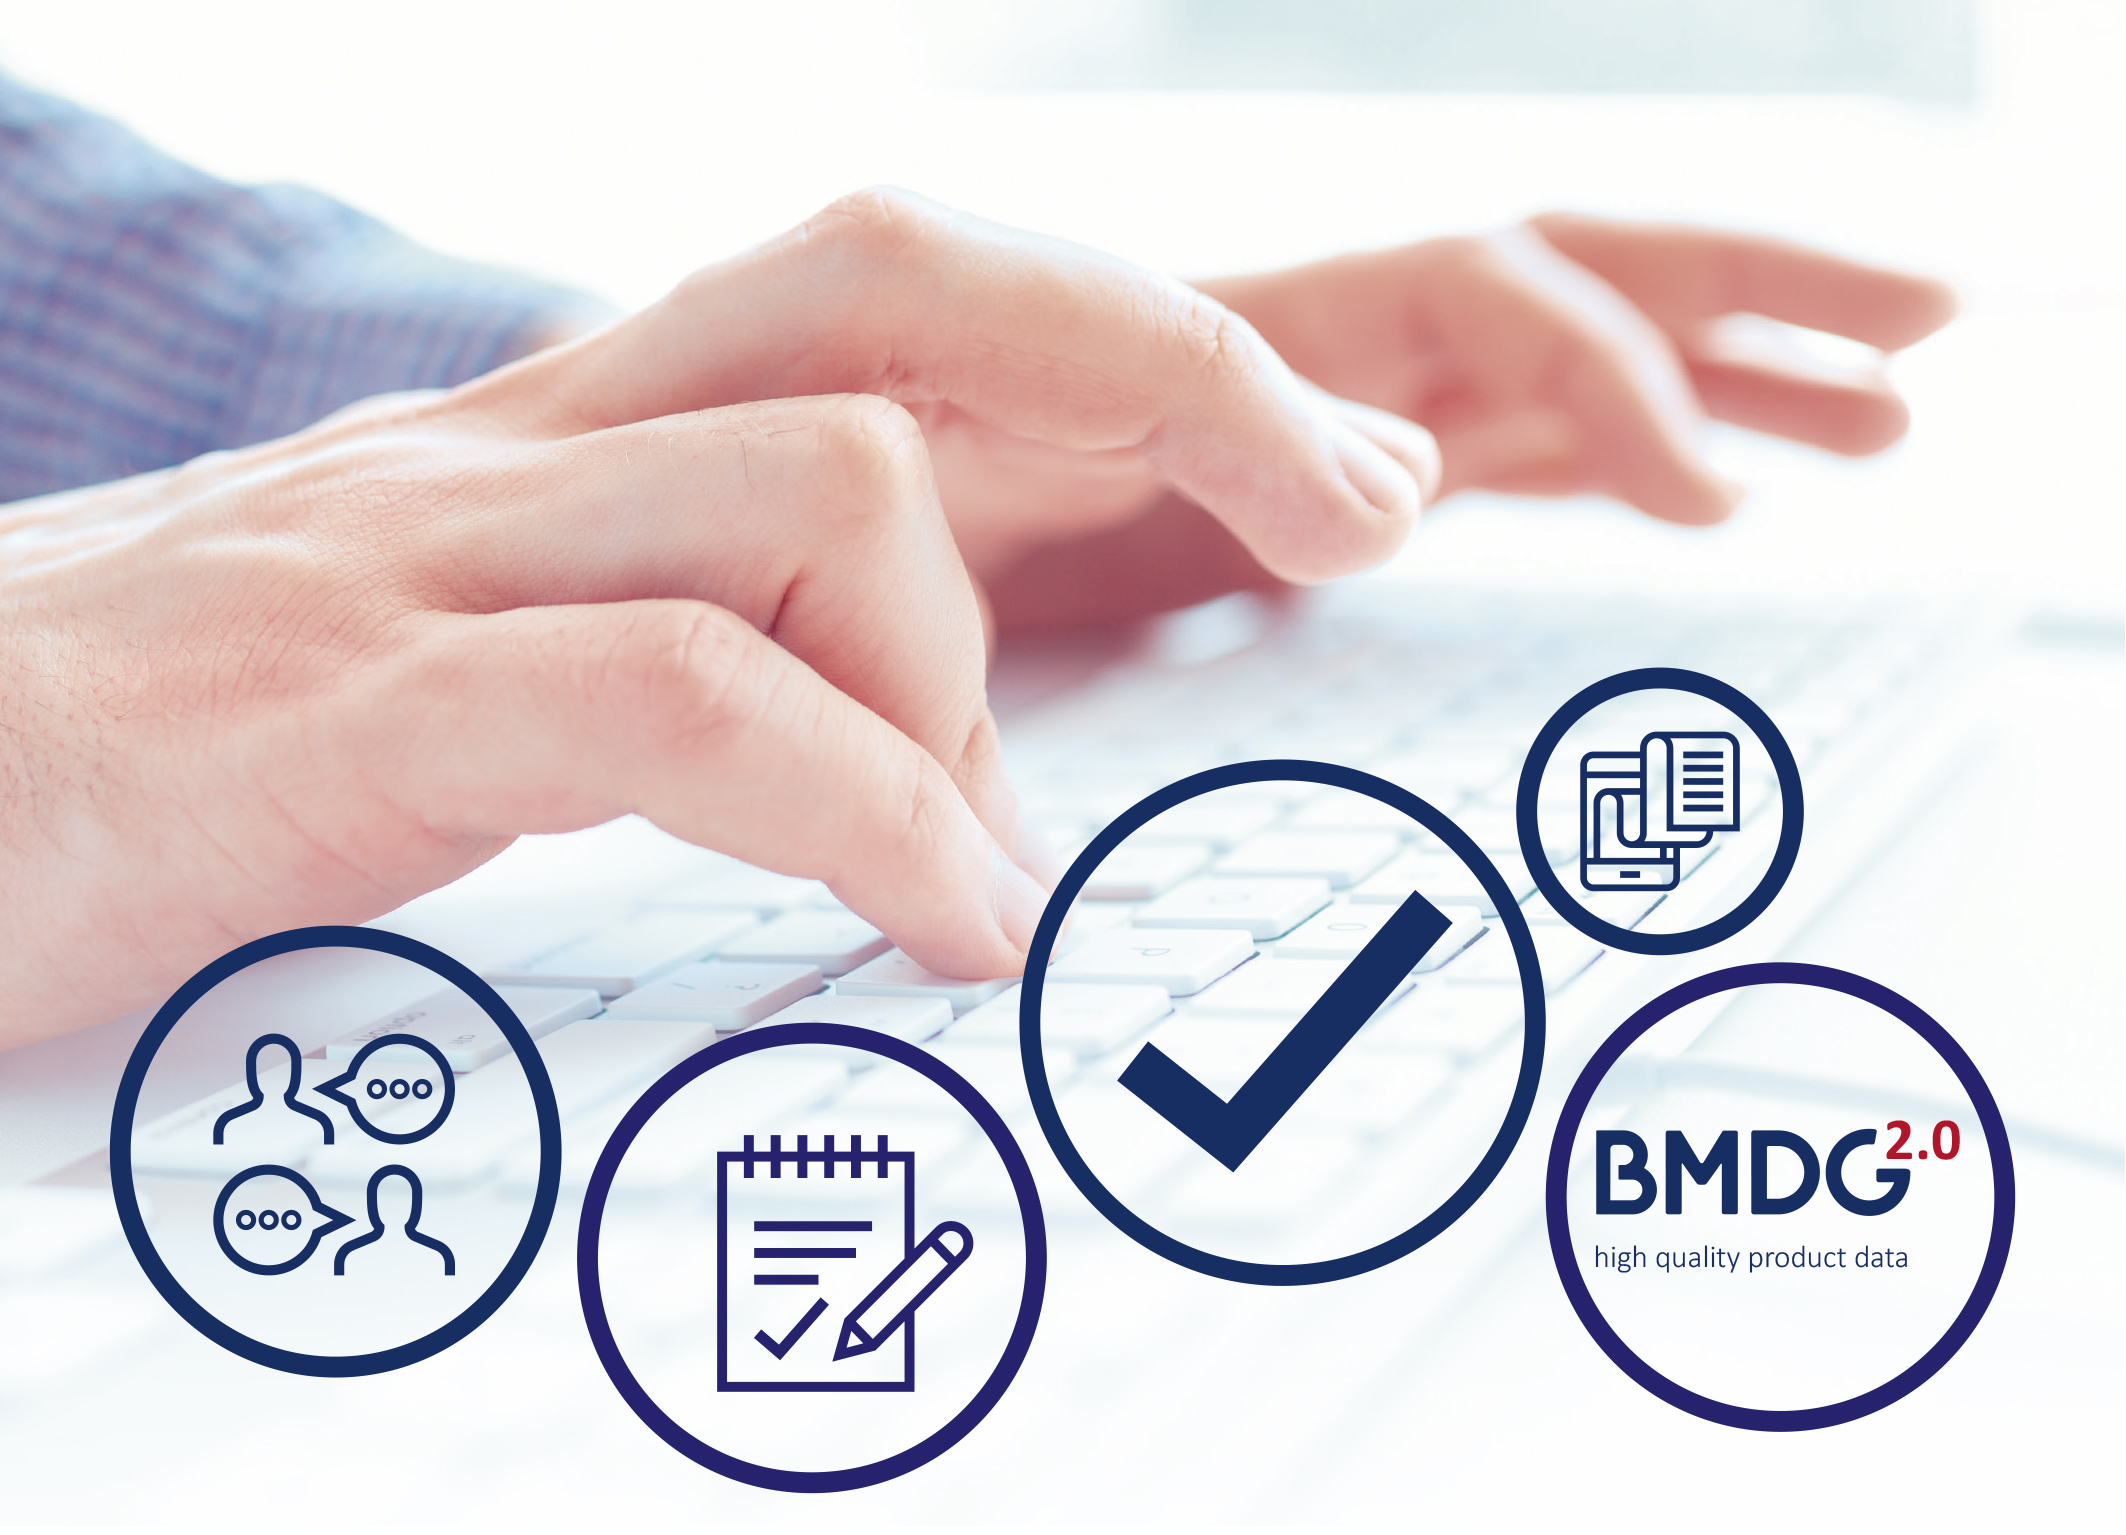 BMDG 2.0: Internationaler Standard für Produktdaten - ARGE erweitert internationale Guideline für Artikelstammdaten